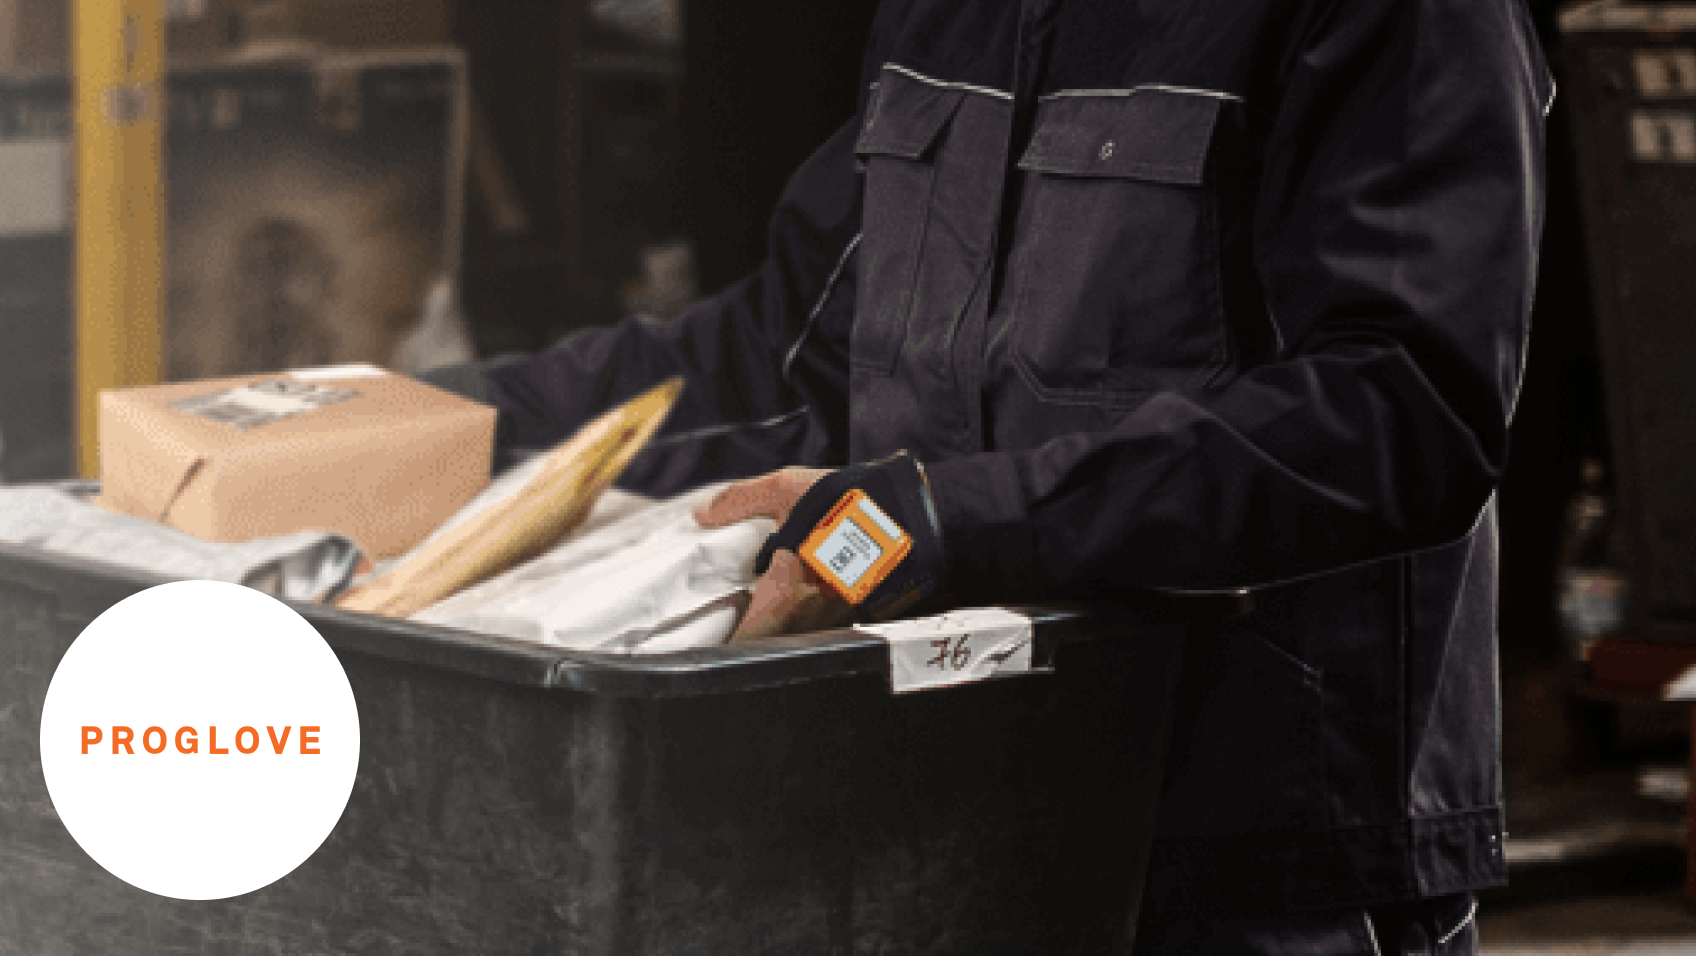 Ein Arbeiter scannt mit einem Proglove Handschuh das Etikett auf einer Box 